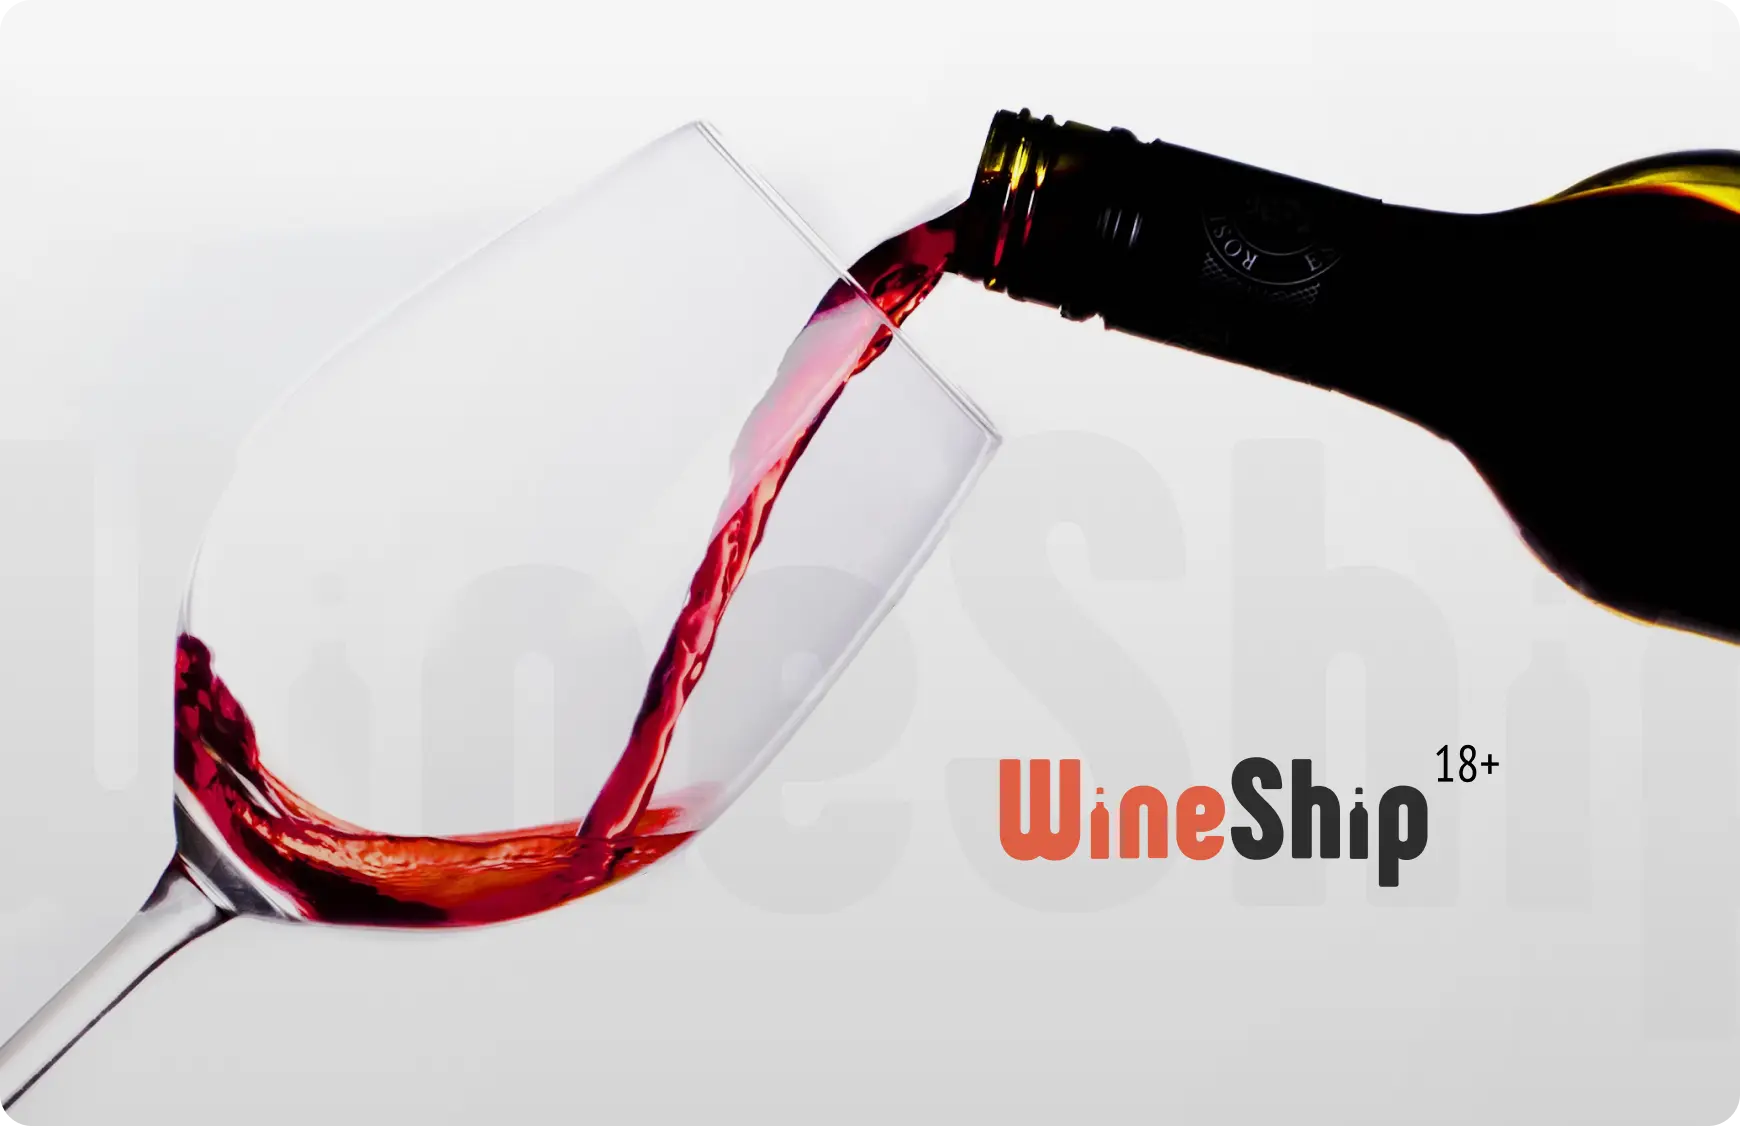 Wineship